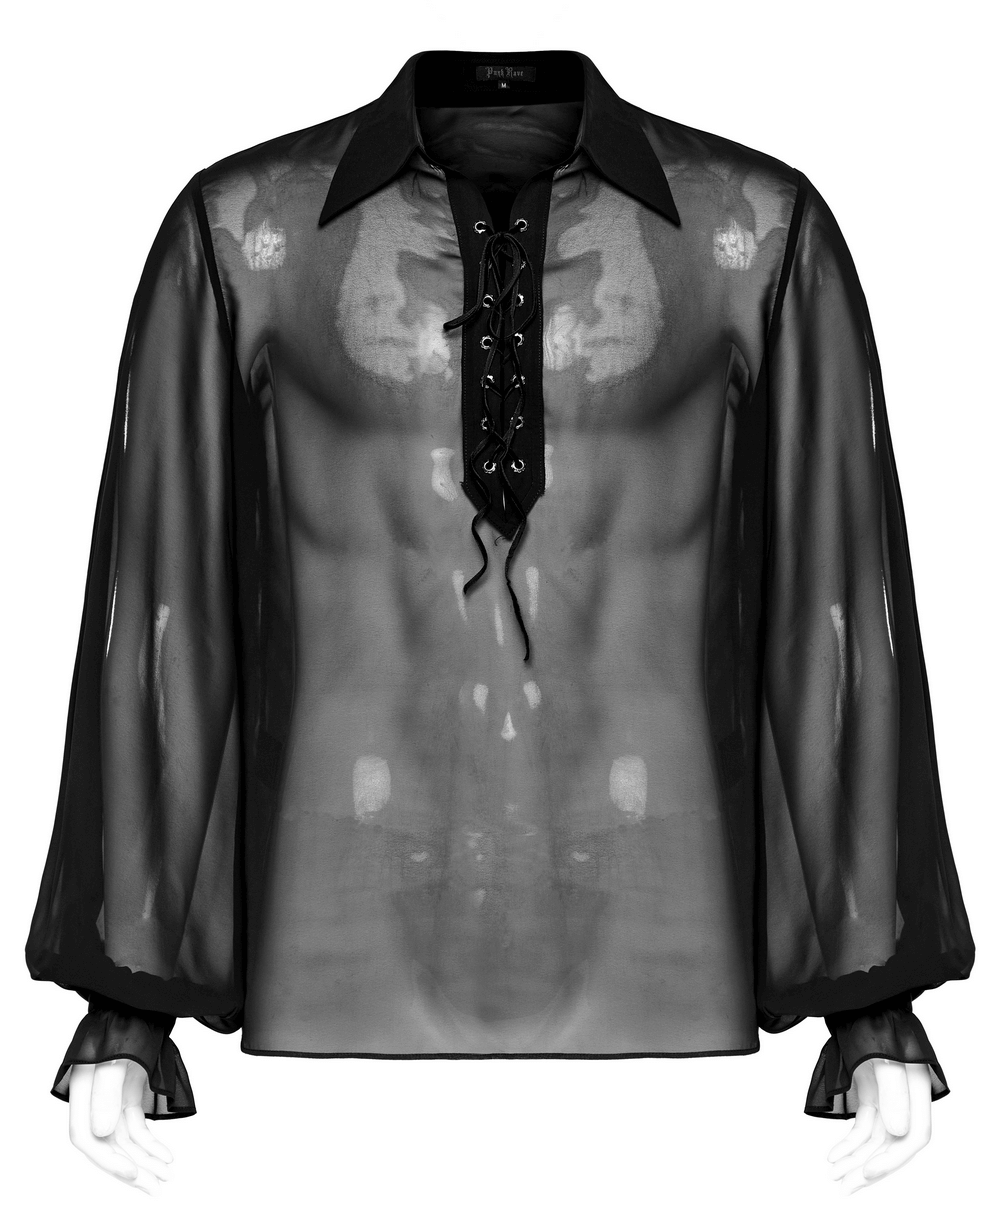 Chemise gothique pour hommes : mousseline transparente avec lacets sur le devant